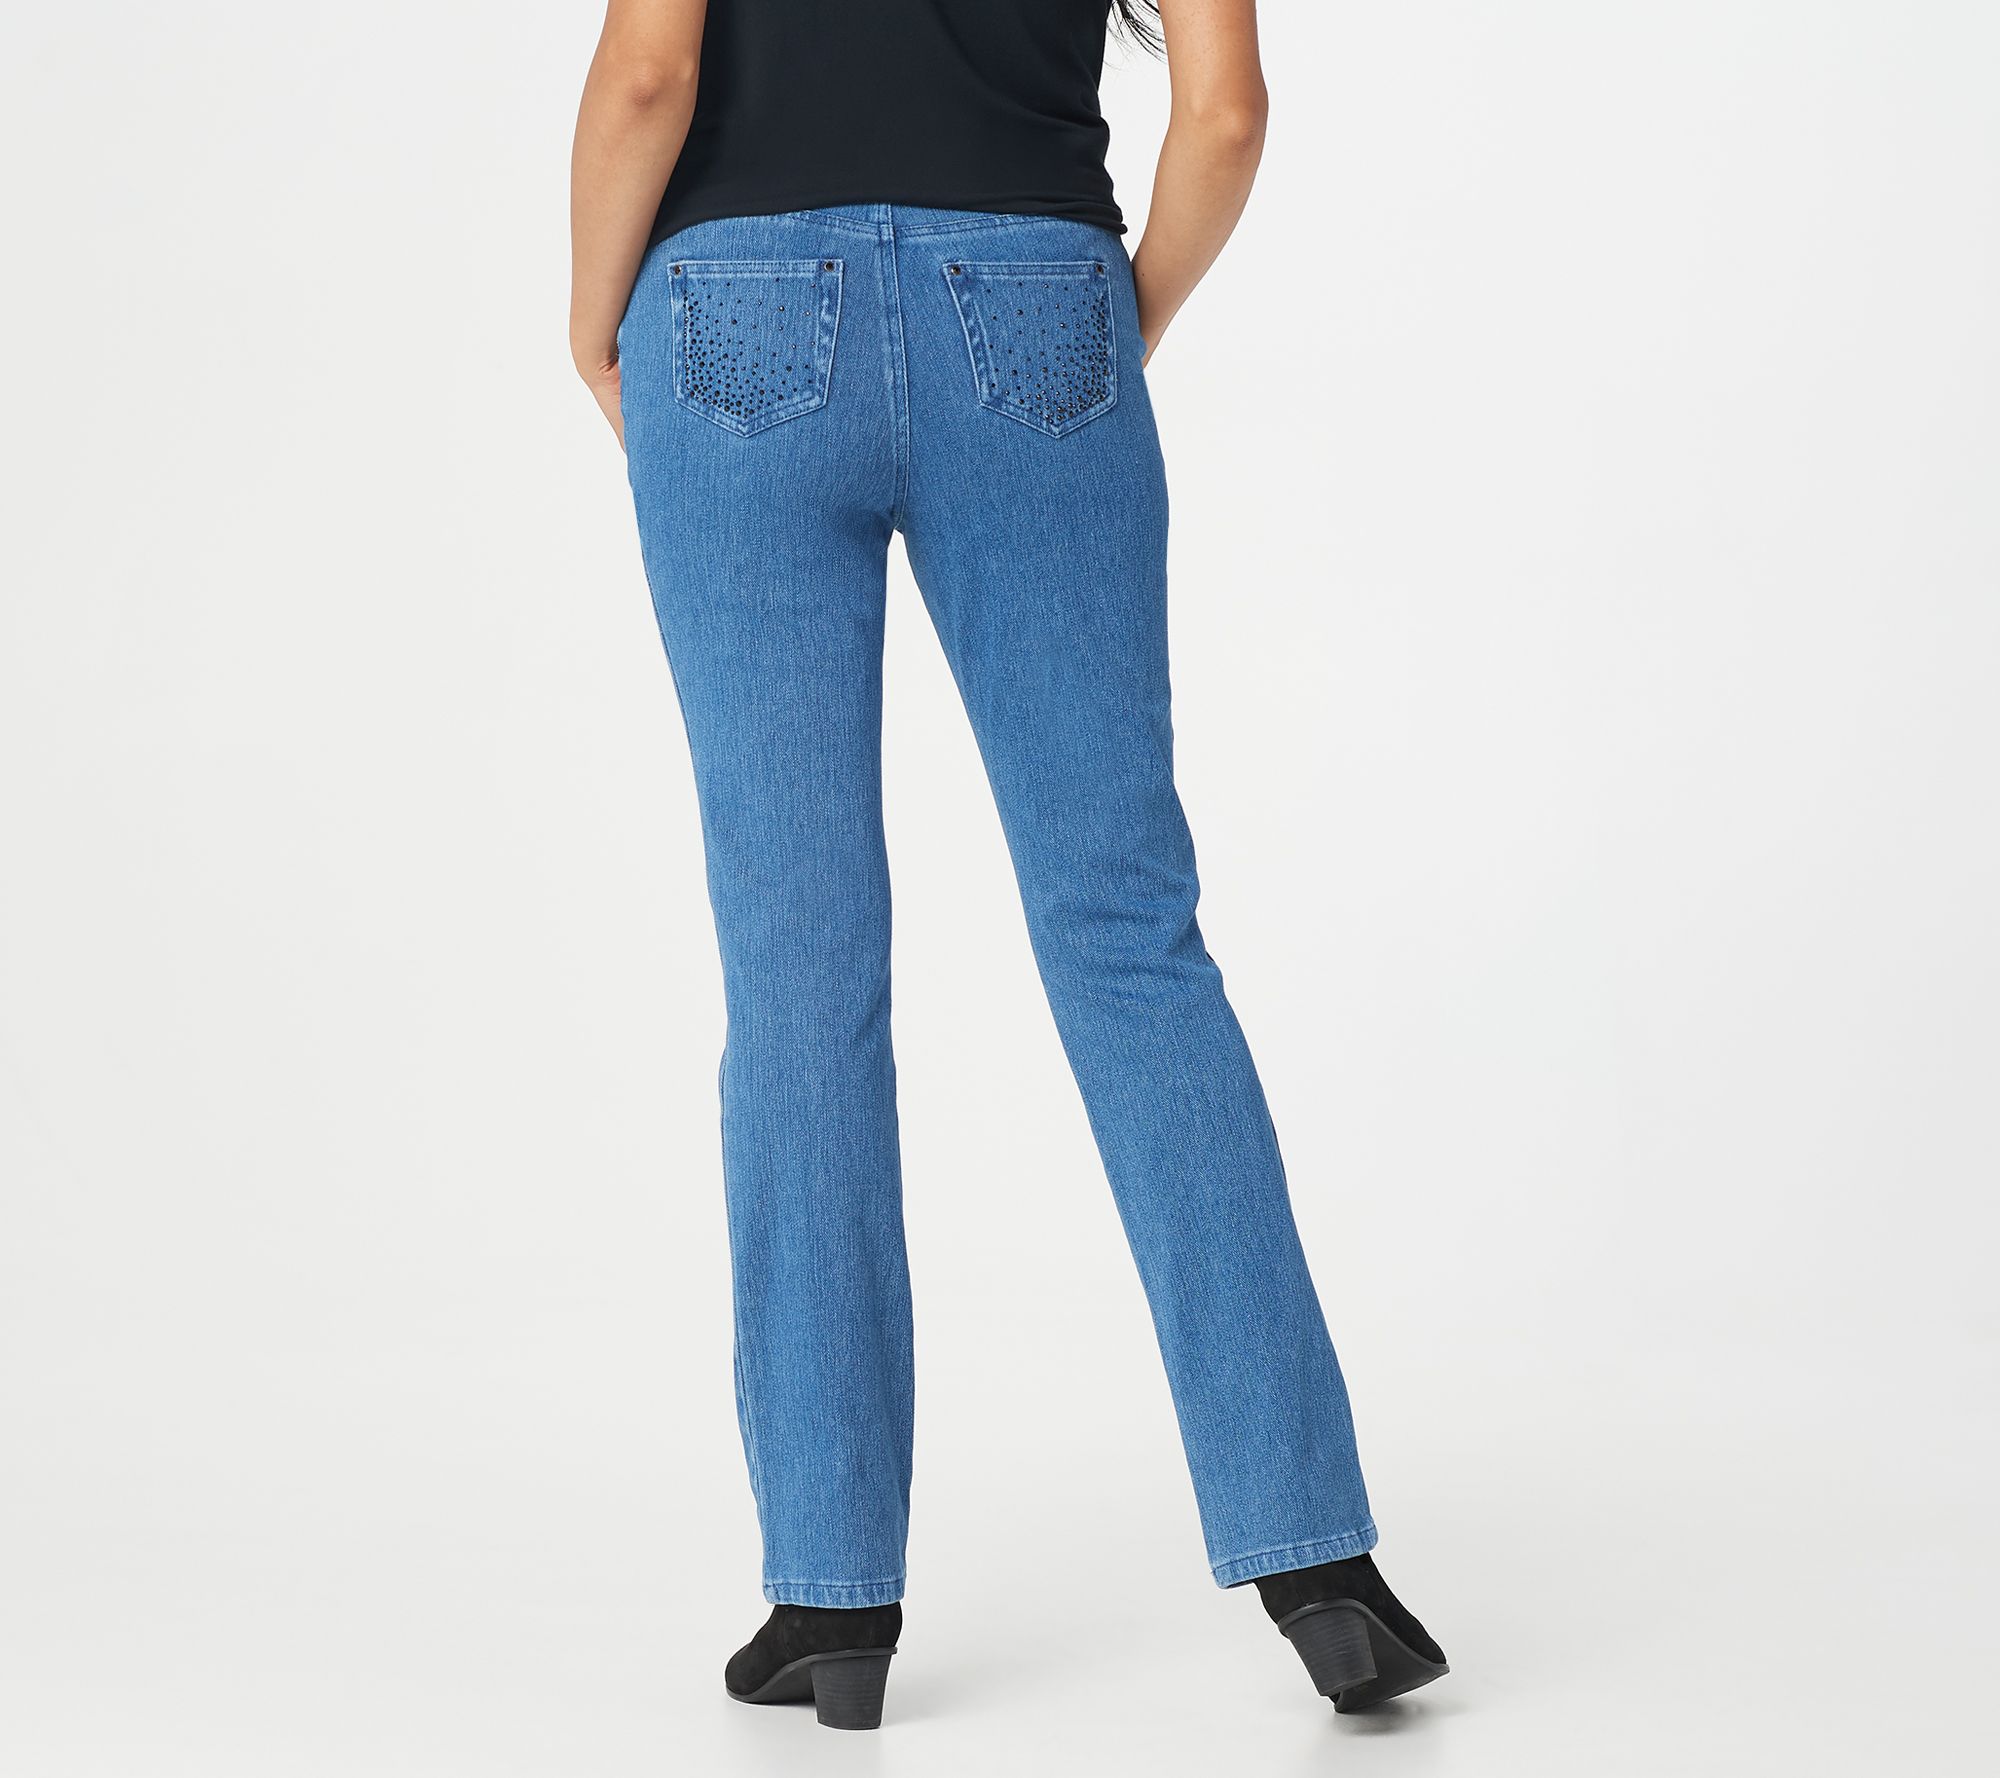 flexibelle jeans qvc